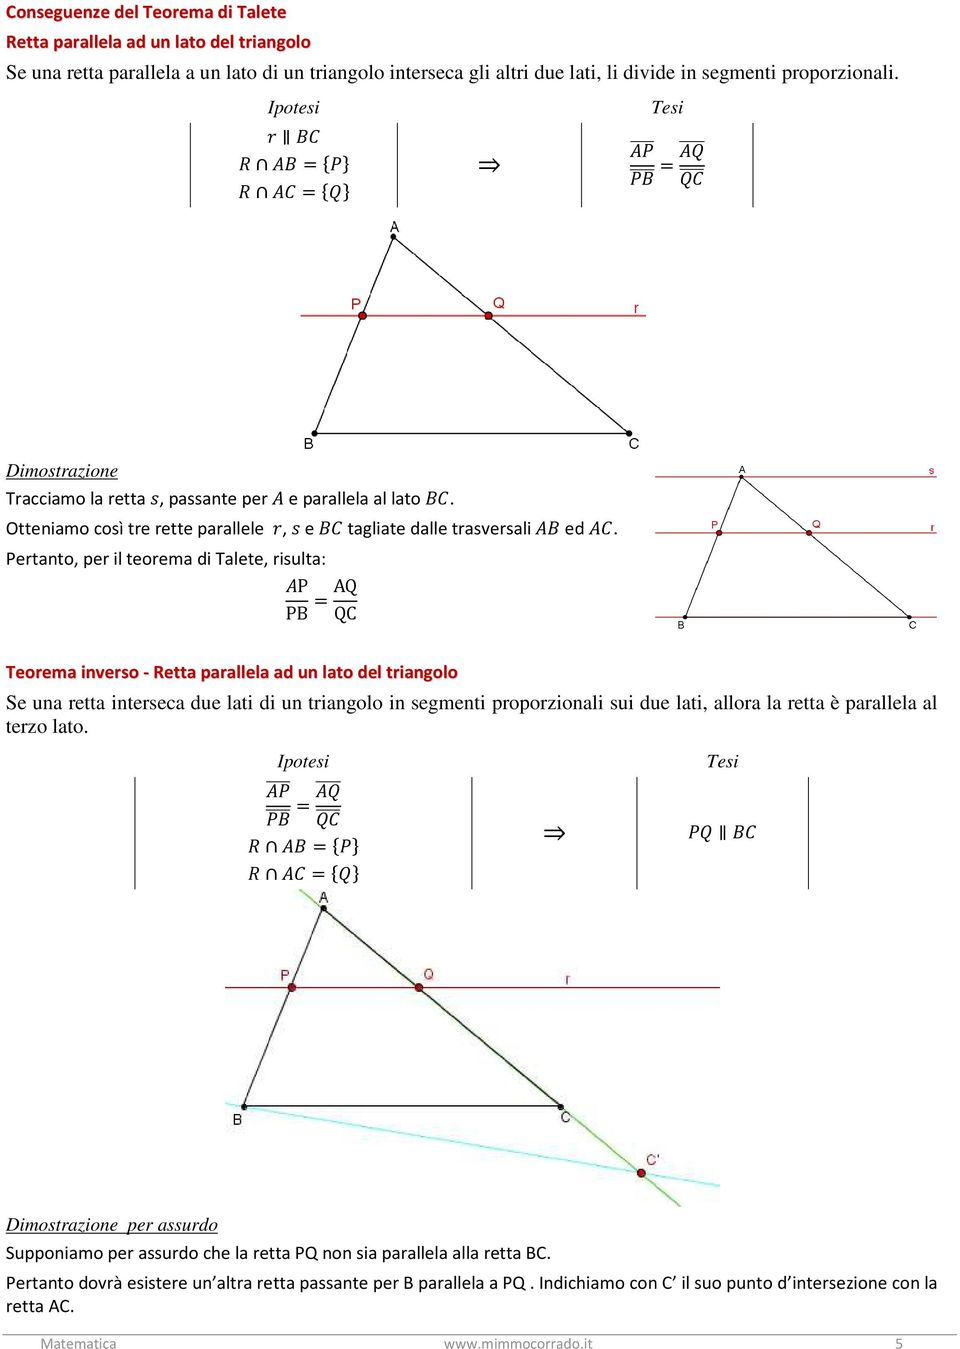 Pertanto, per il teorema di Talete, risulta: P PB =AQ QC Teorema inverso - Retta parallela ad un lato del triangolo Se una retta interseca due lati di un triangolo in segmenti proporzionali sui due